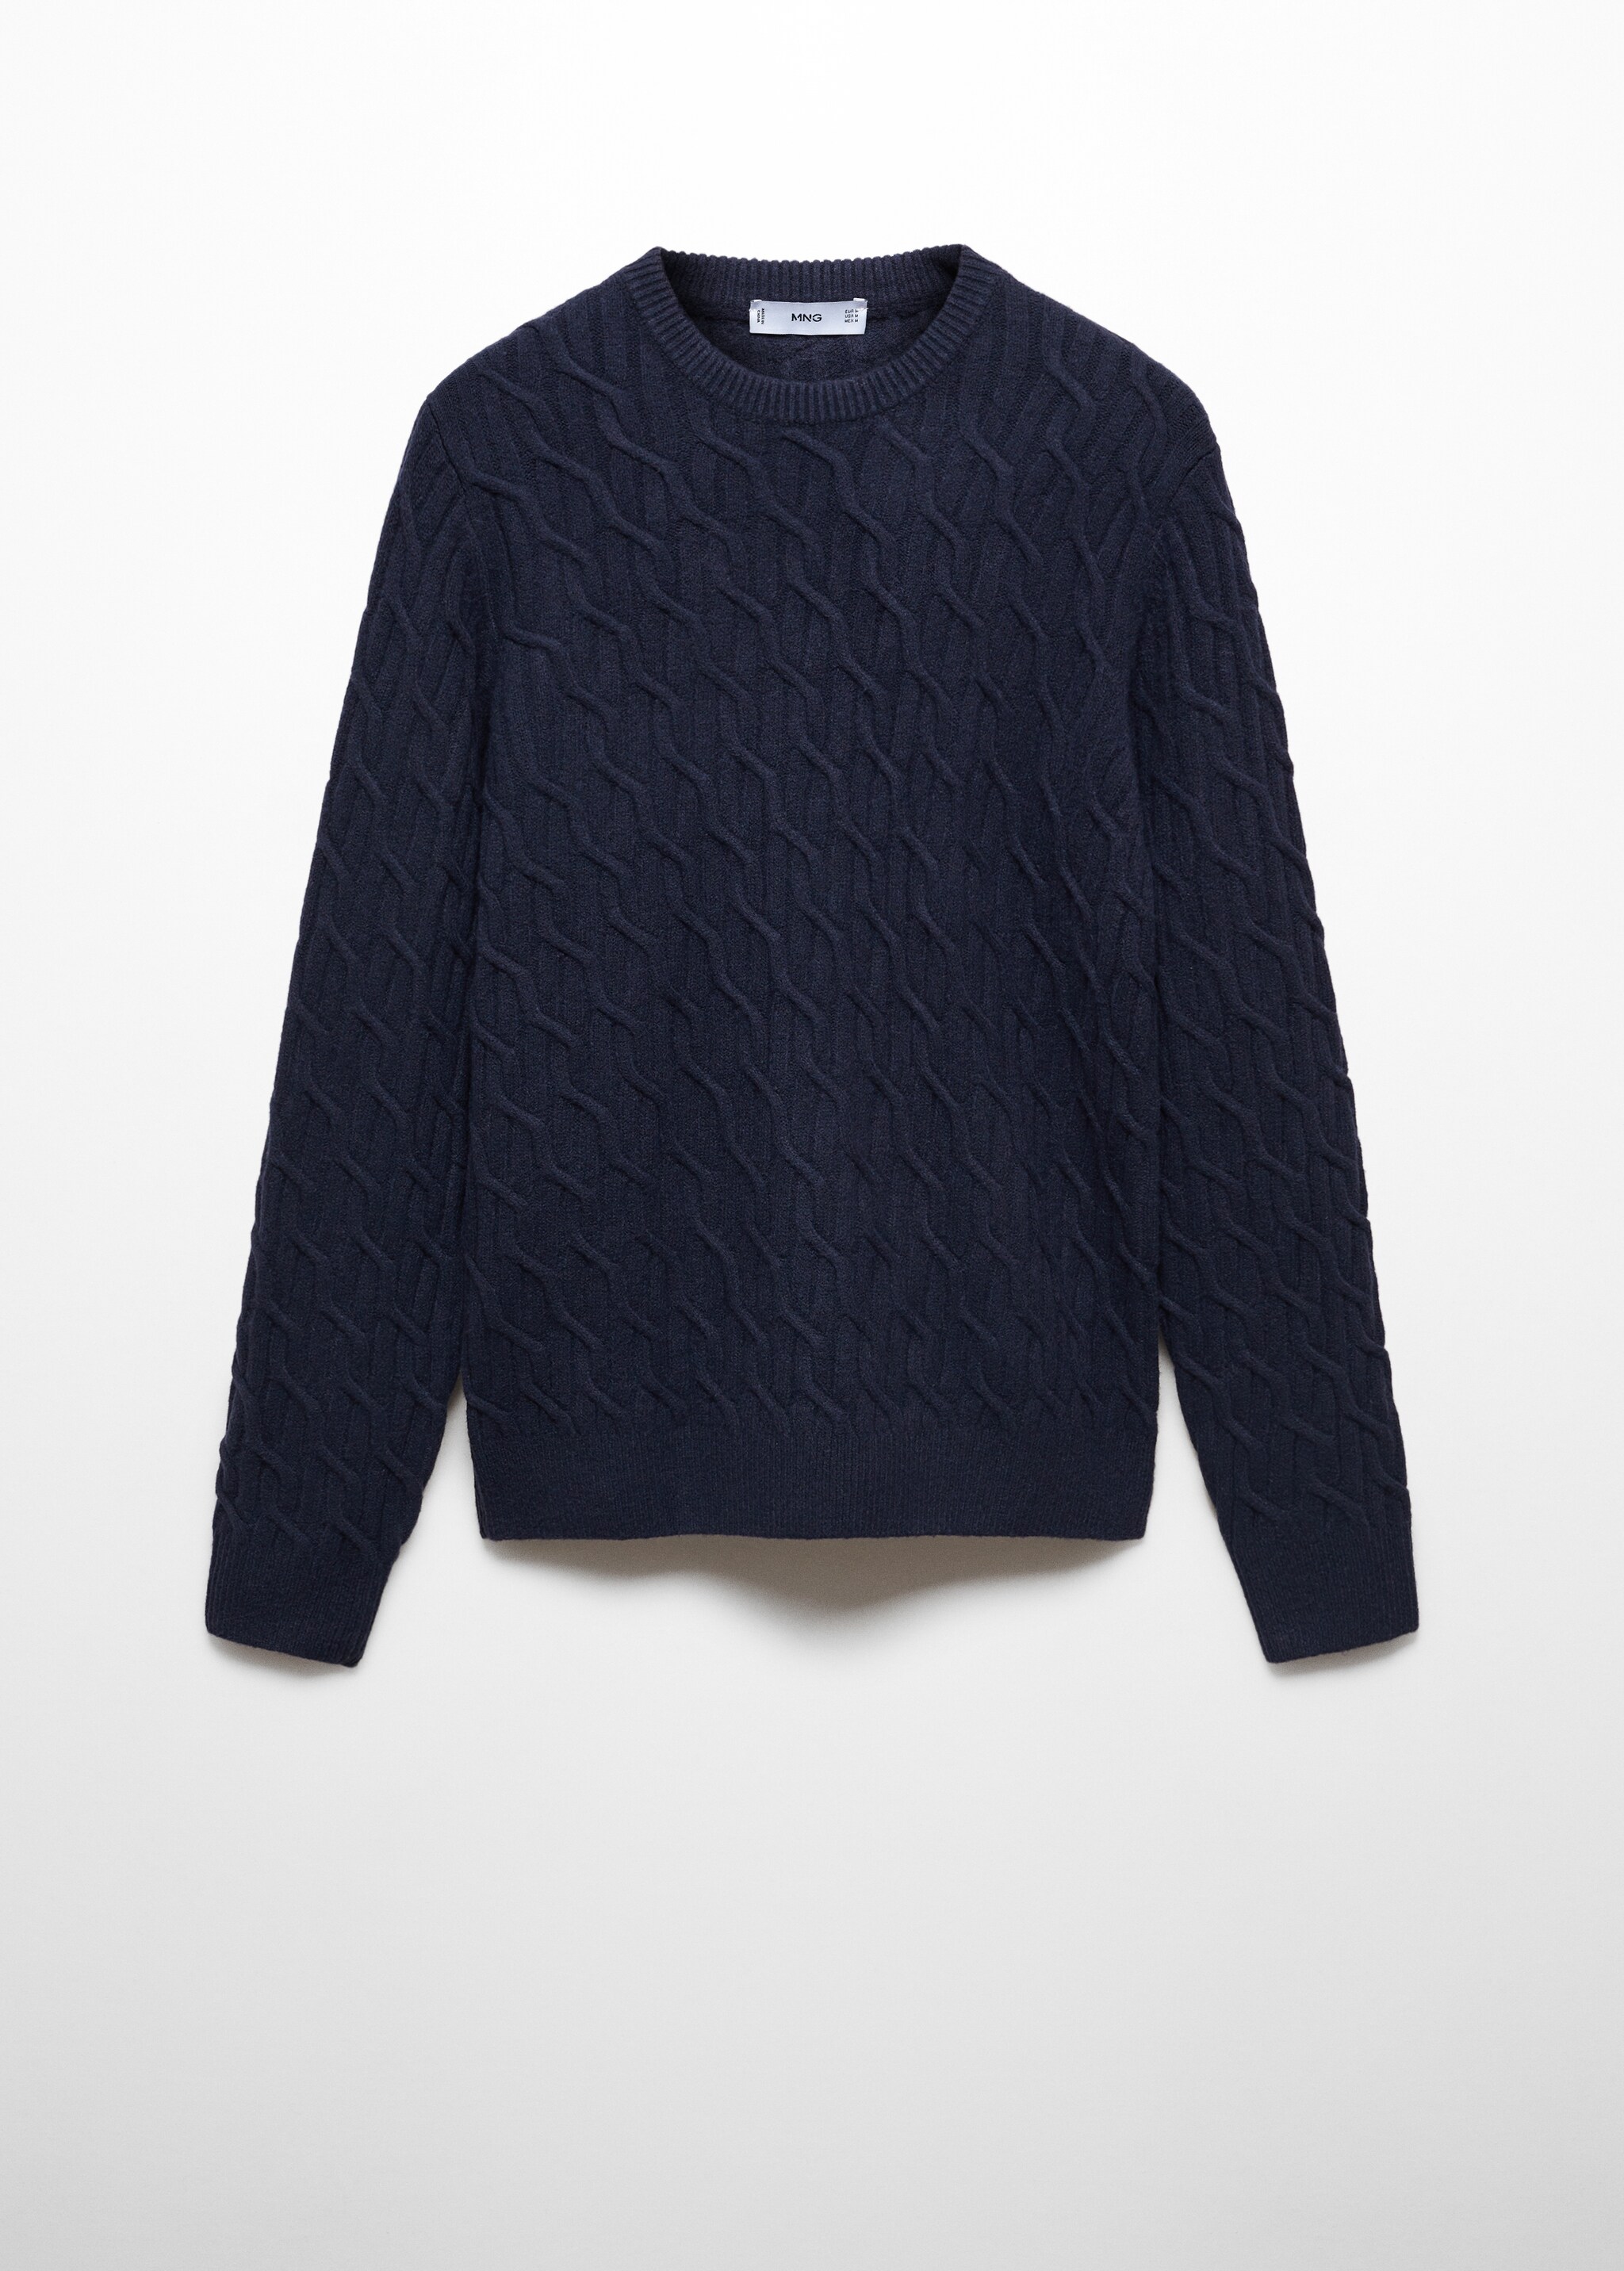 Braided knitted sweater - Articolo senza modello